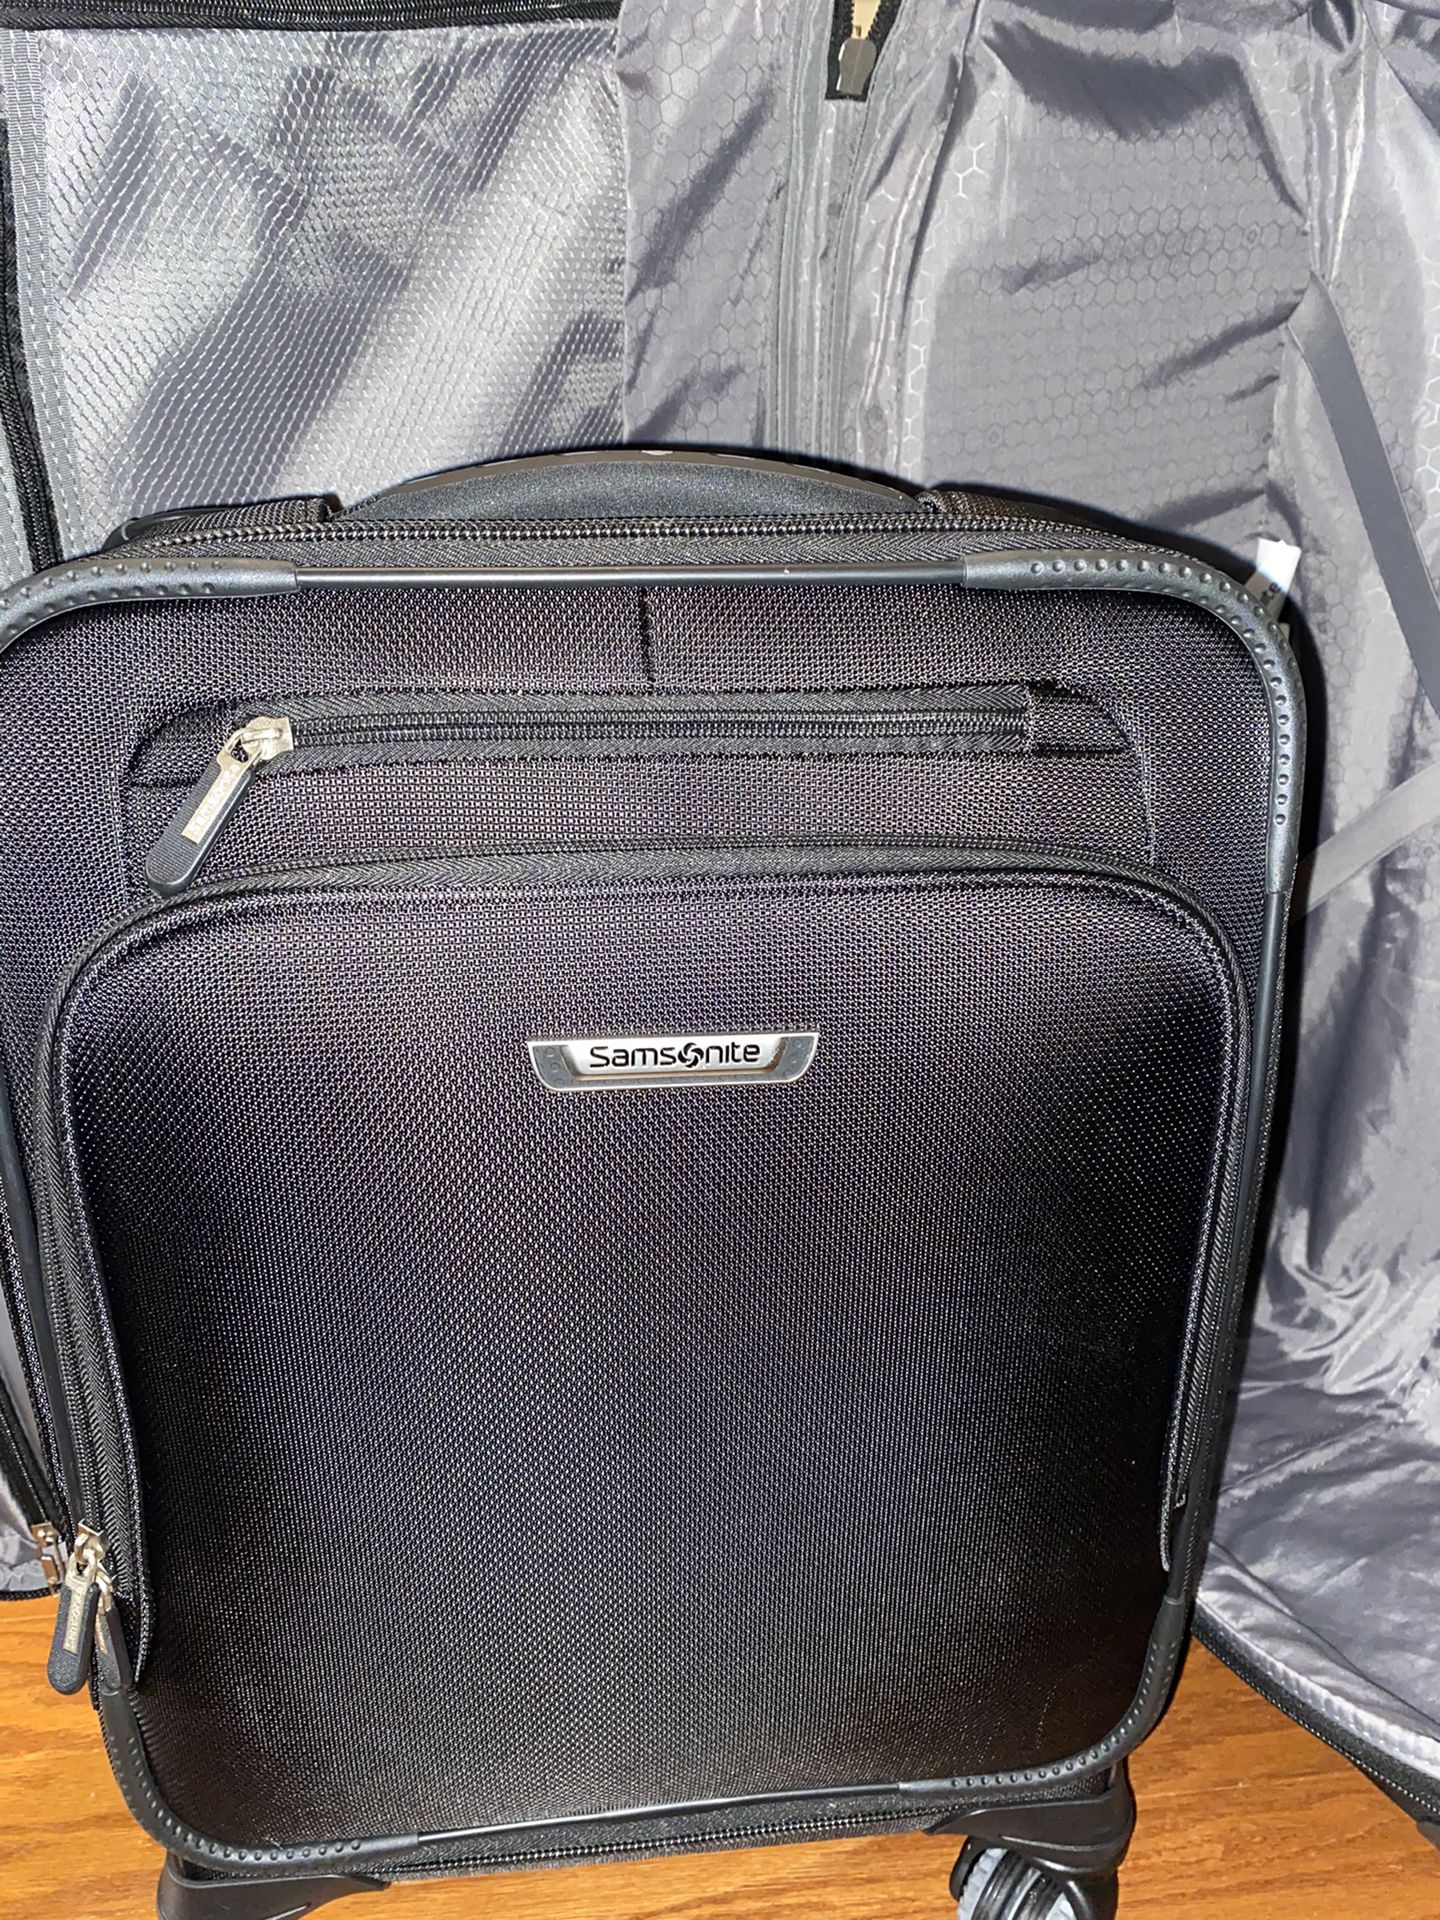 Samsonite Precision 2-Pc. Softside Luggage Set